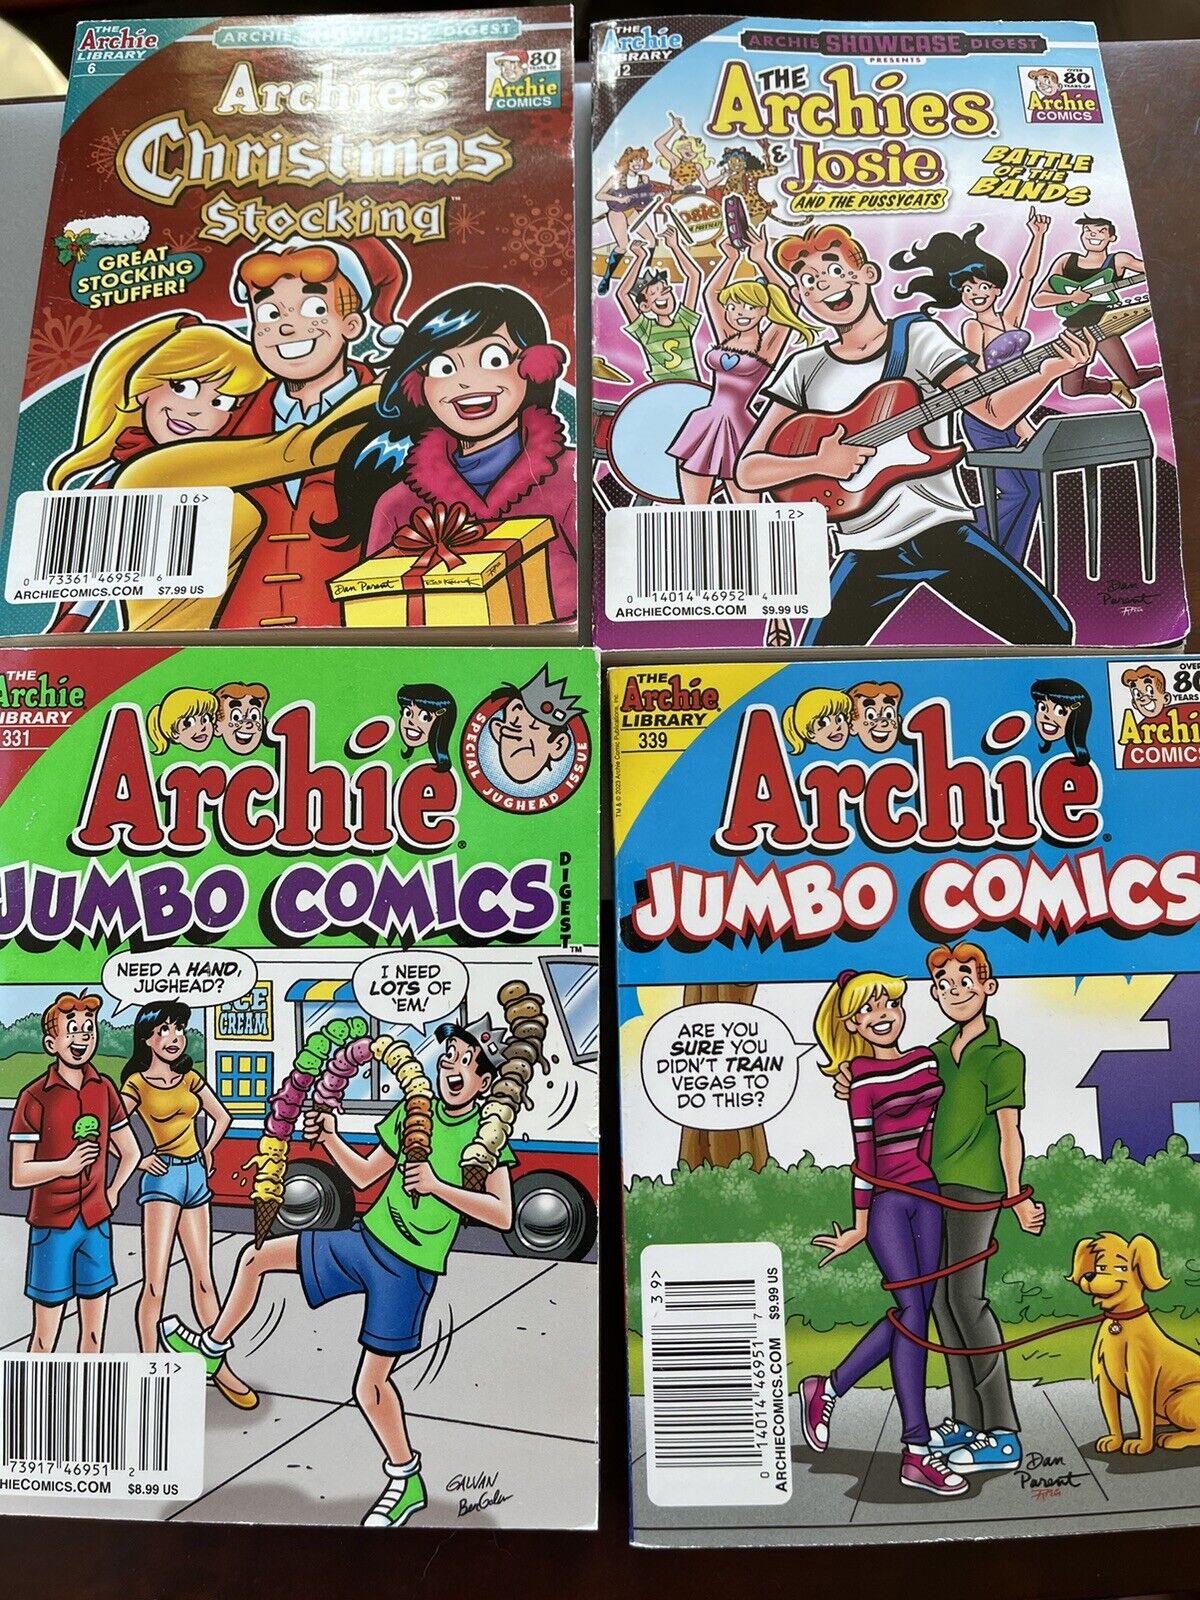 12 Archie Jumbo Comics